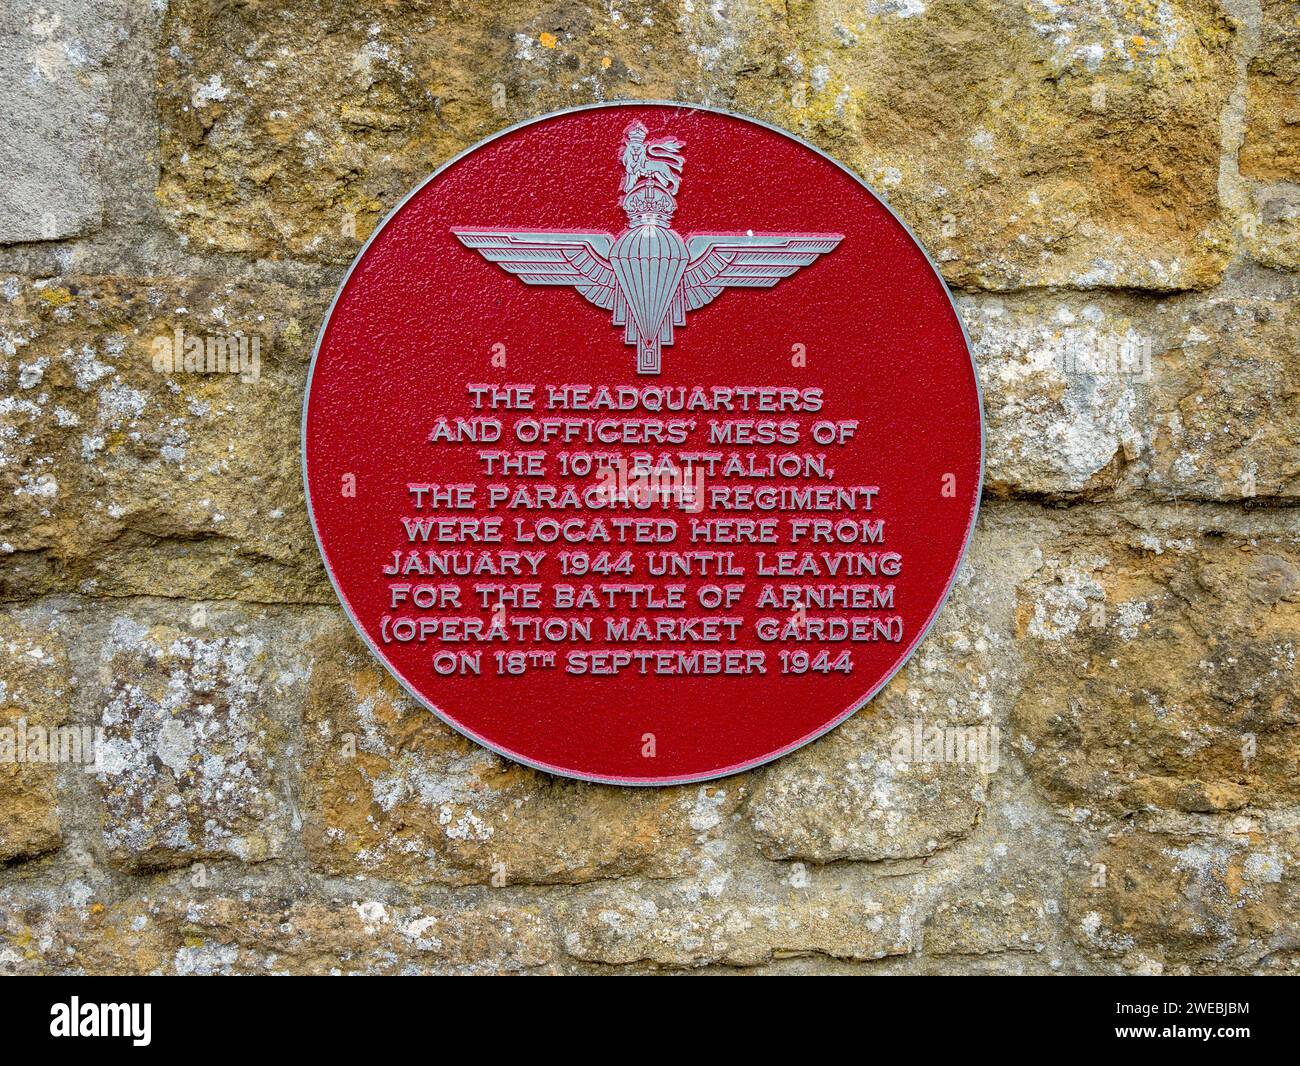 Battalion Trail - panneau indiquant l'emplacement du mess des officiers du 10e bataillon du régiment de parachutistes en janvier 1944, Somerby, Leicestershire Banque D'Images